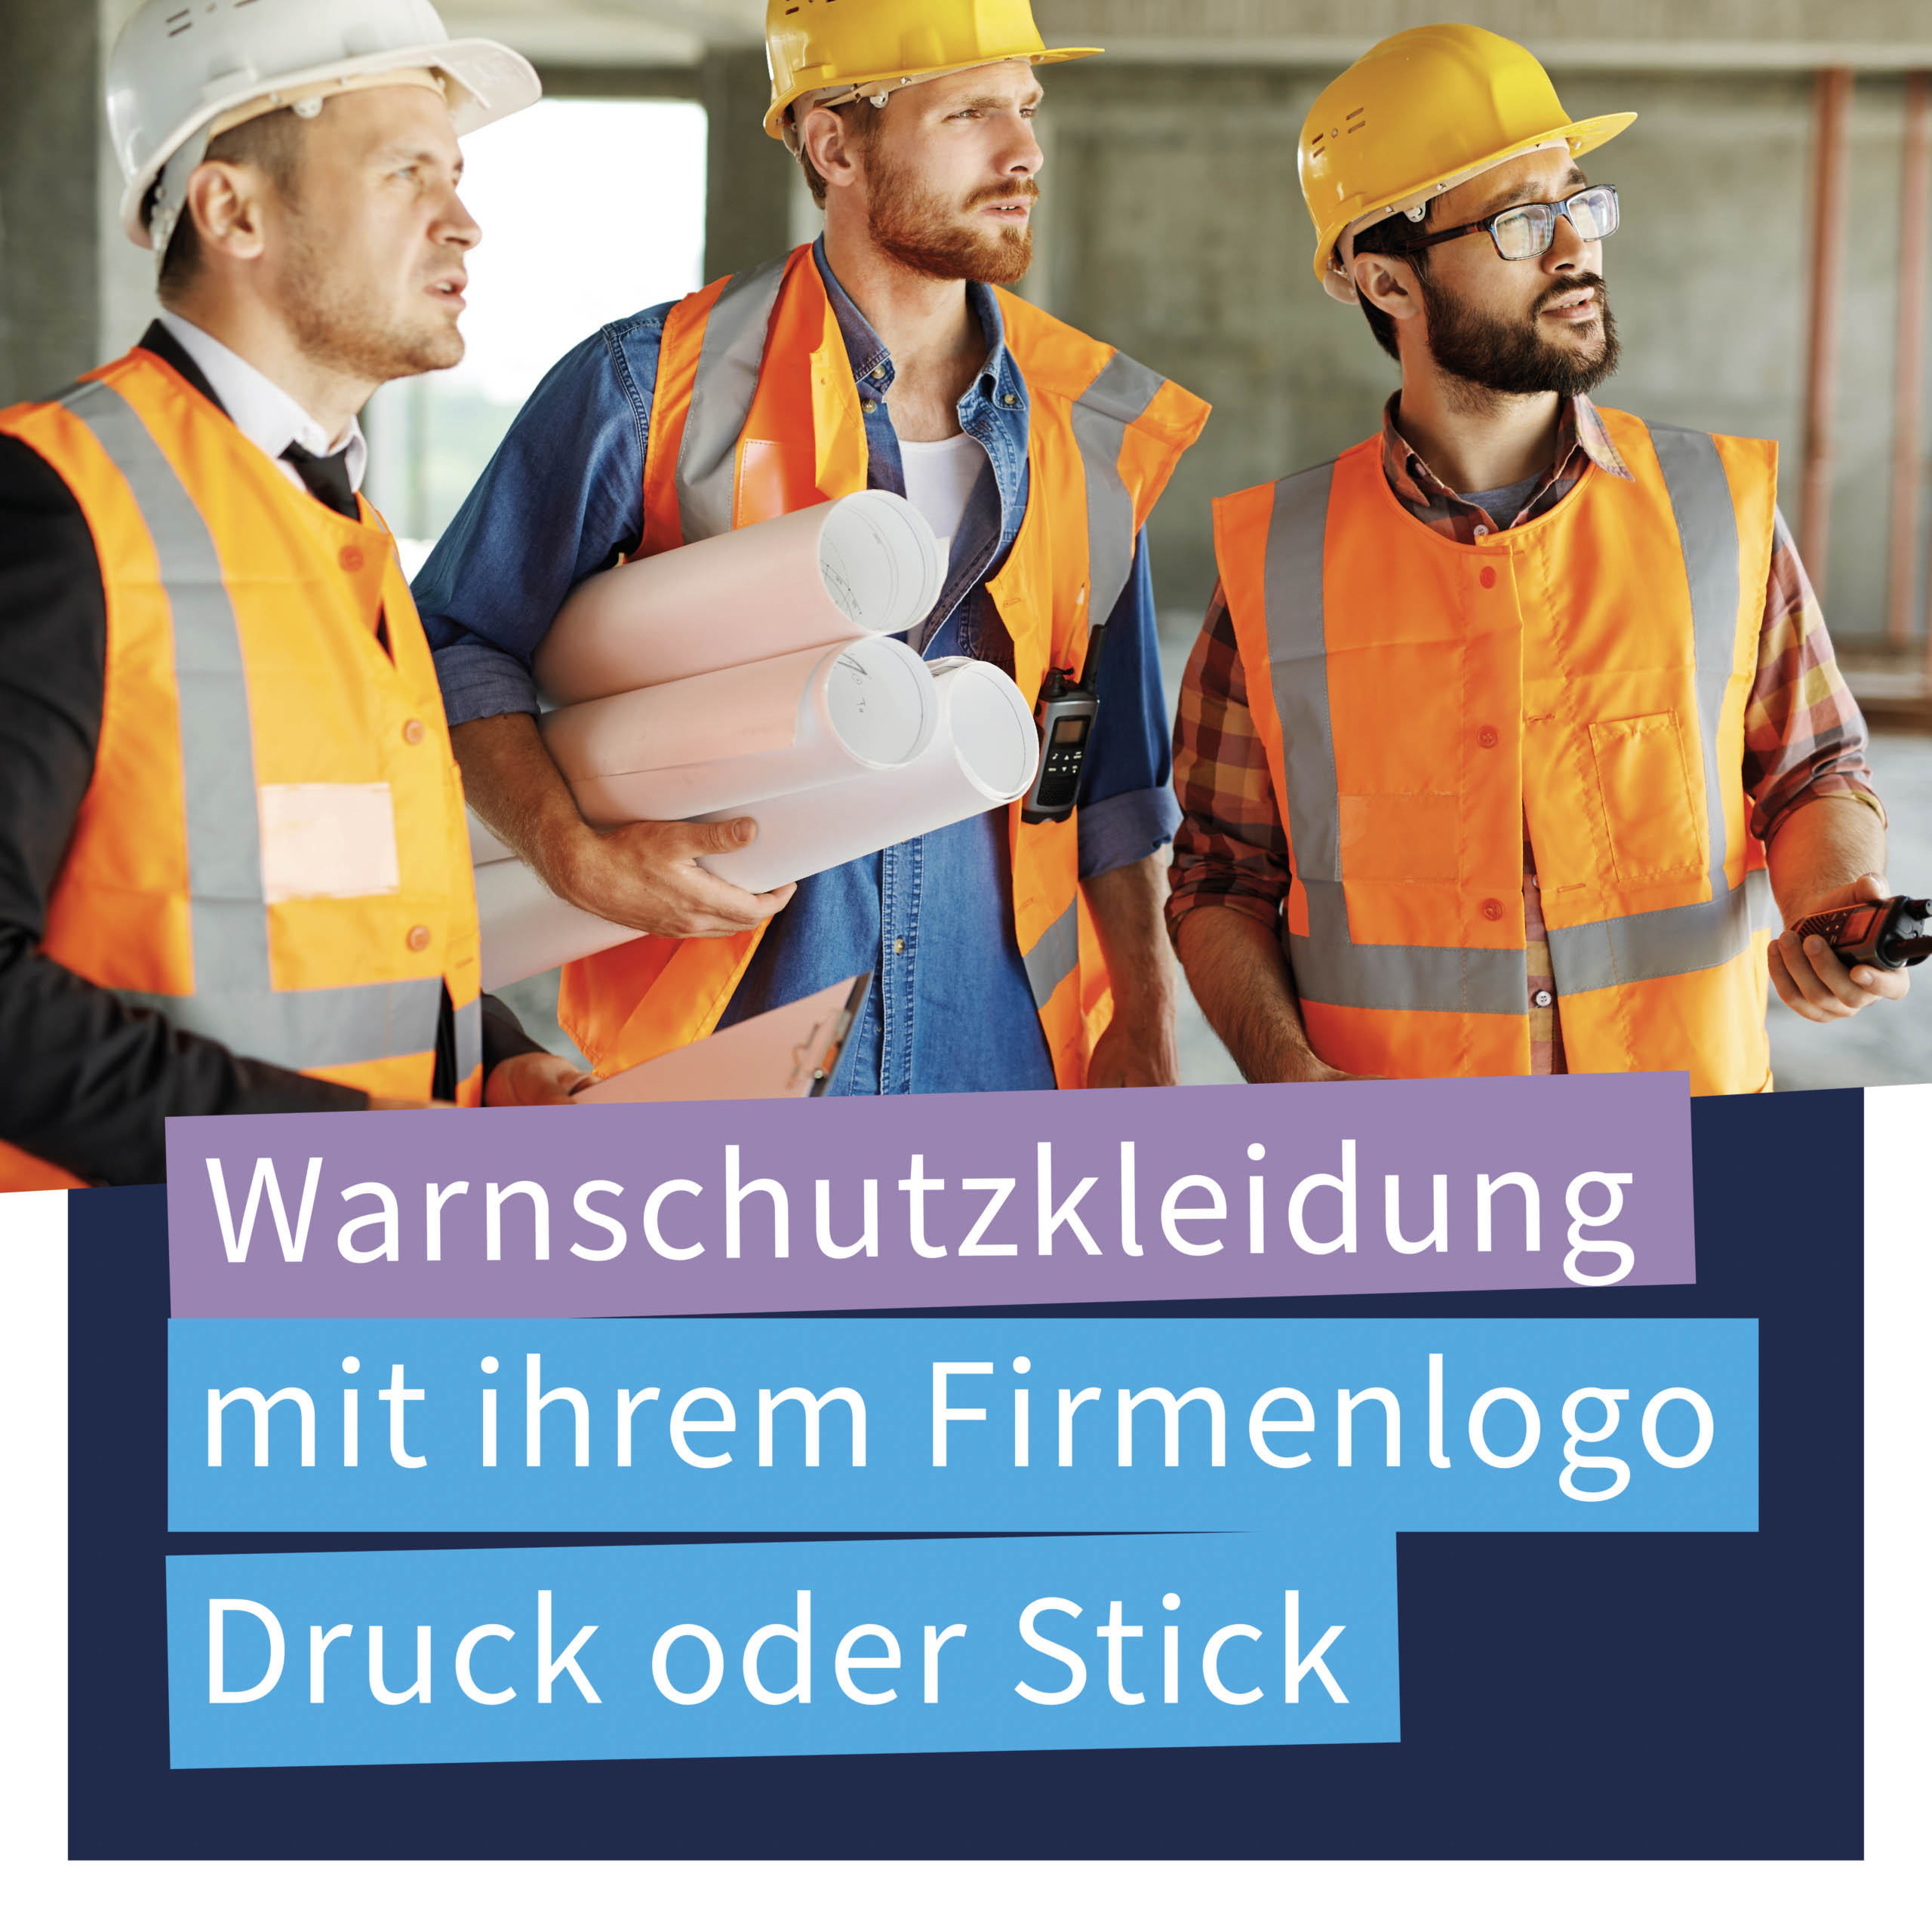 Warnschutzkleidung in Wittlich bei Trier mit ihrem Firmenlogo, Druck oder Stick